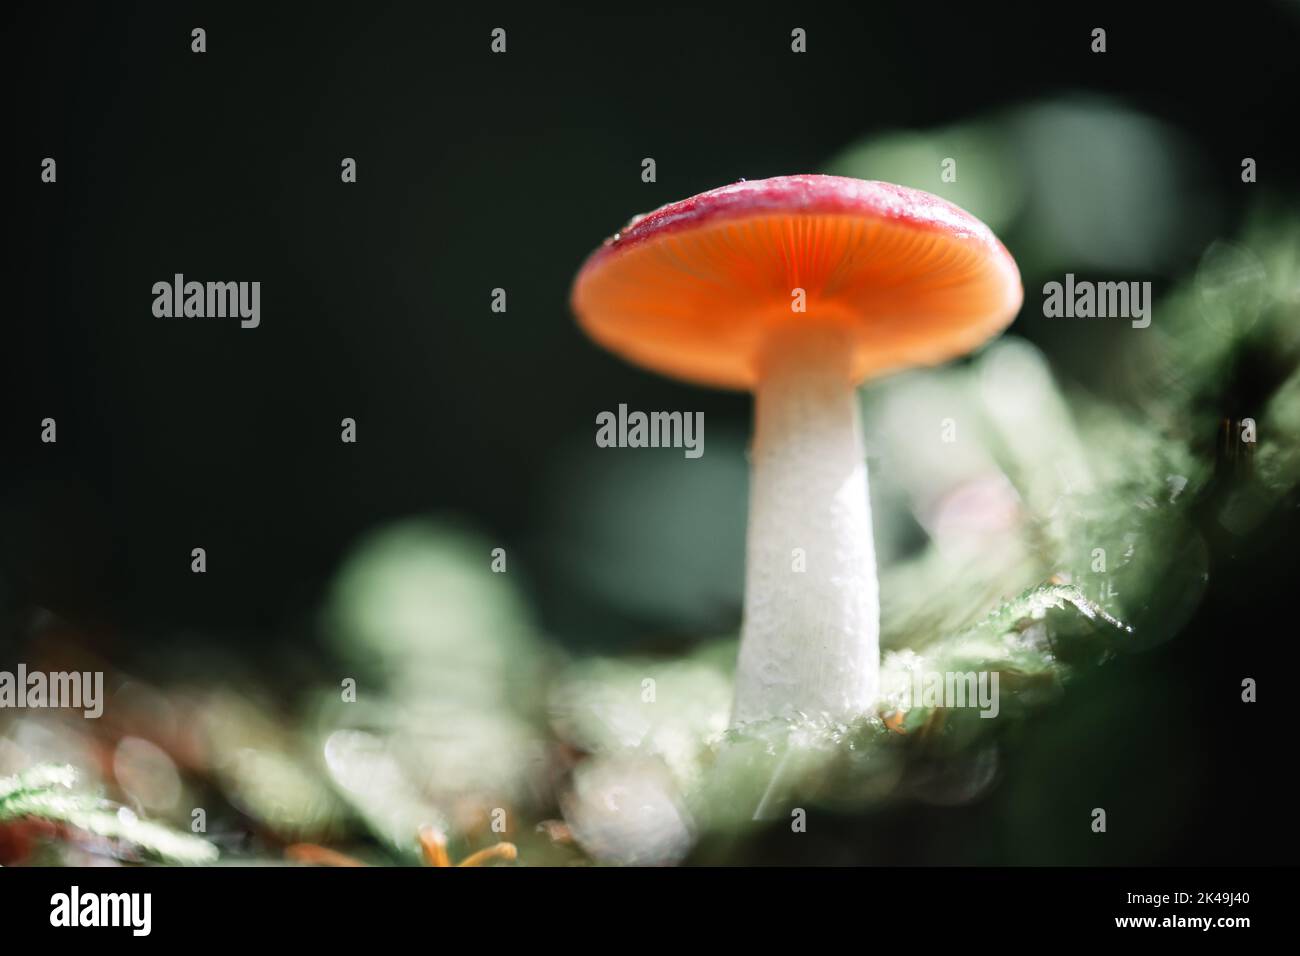 Superbe photo macro d'un seul champignon de forêt orange en mousse. Photographie macro nature Banque D'Images